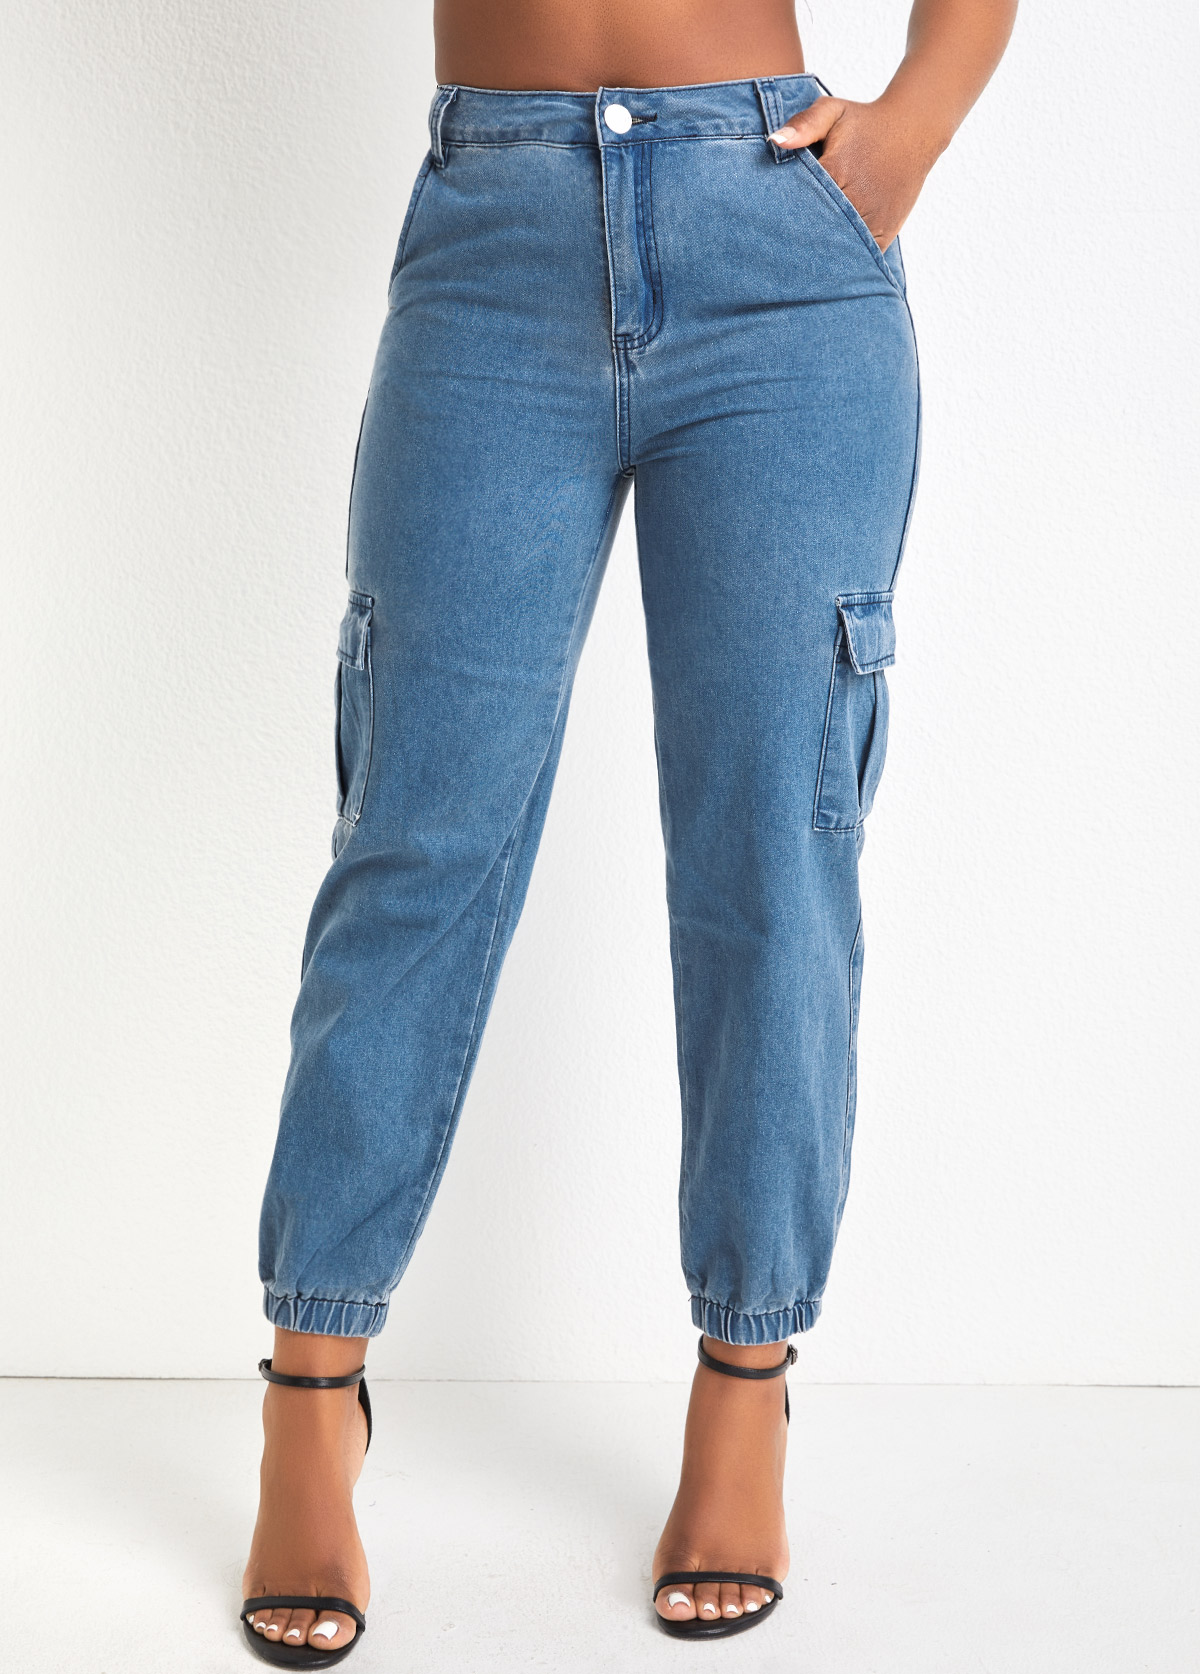 Jeansblaue Jogger-Hose mit Taschen und Reißverschluss